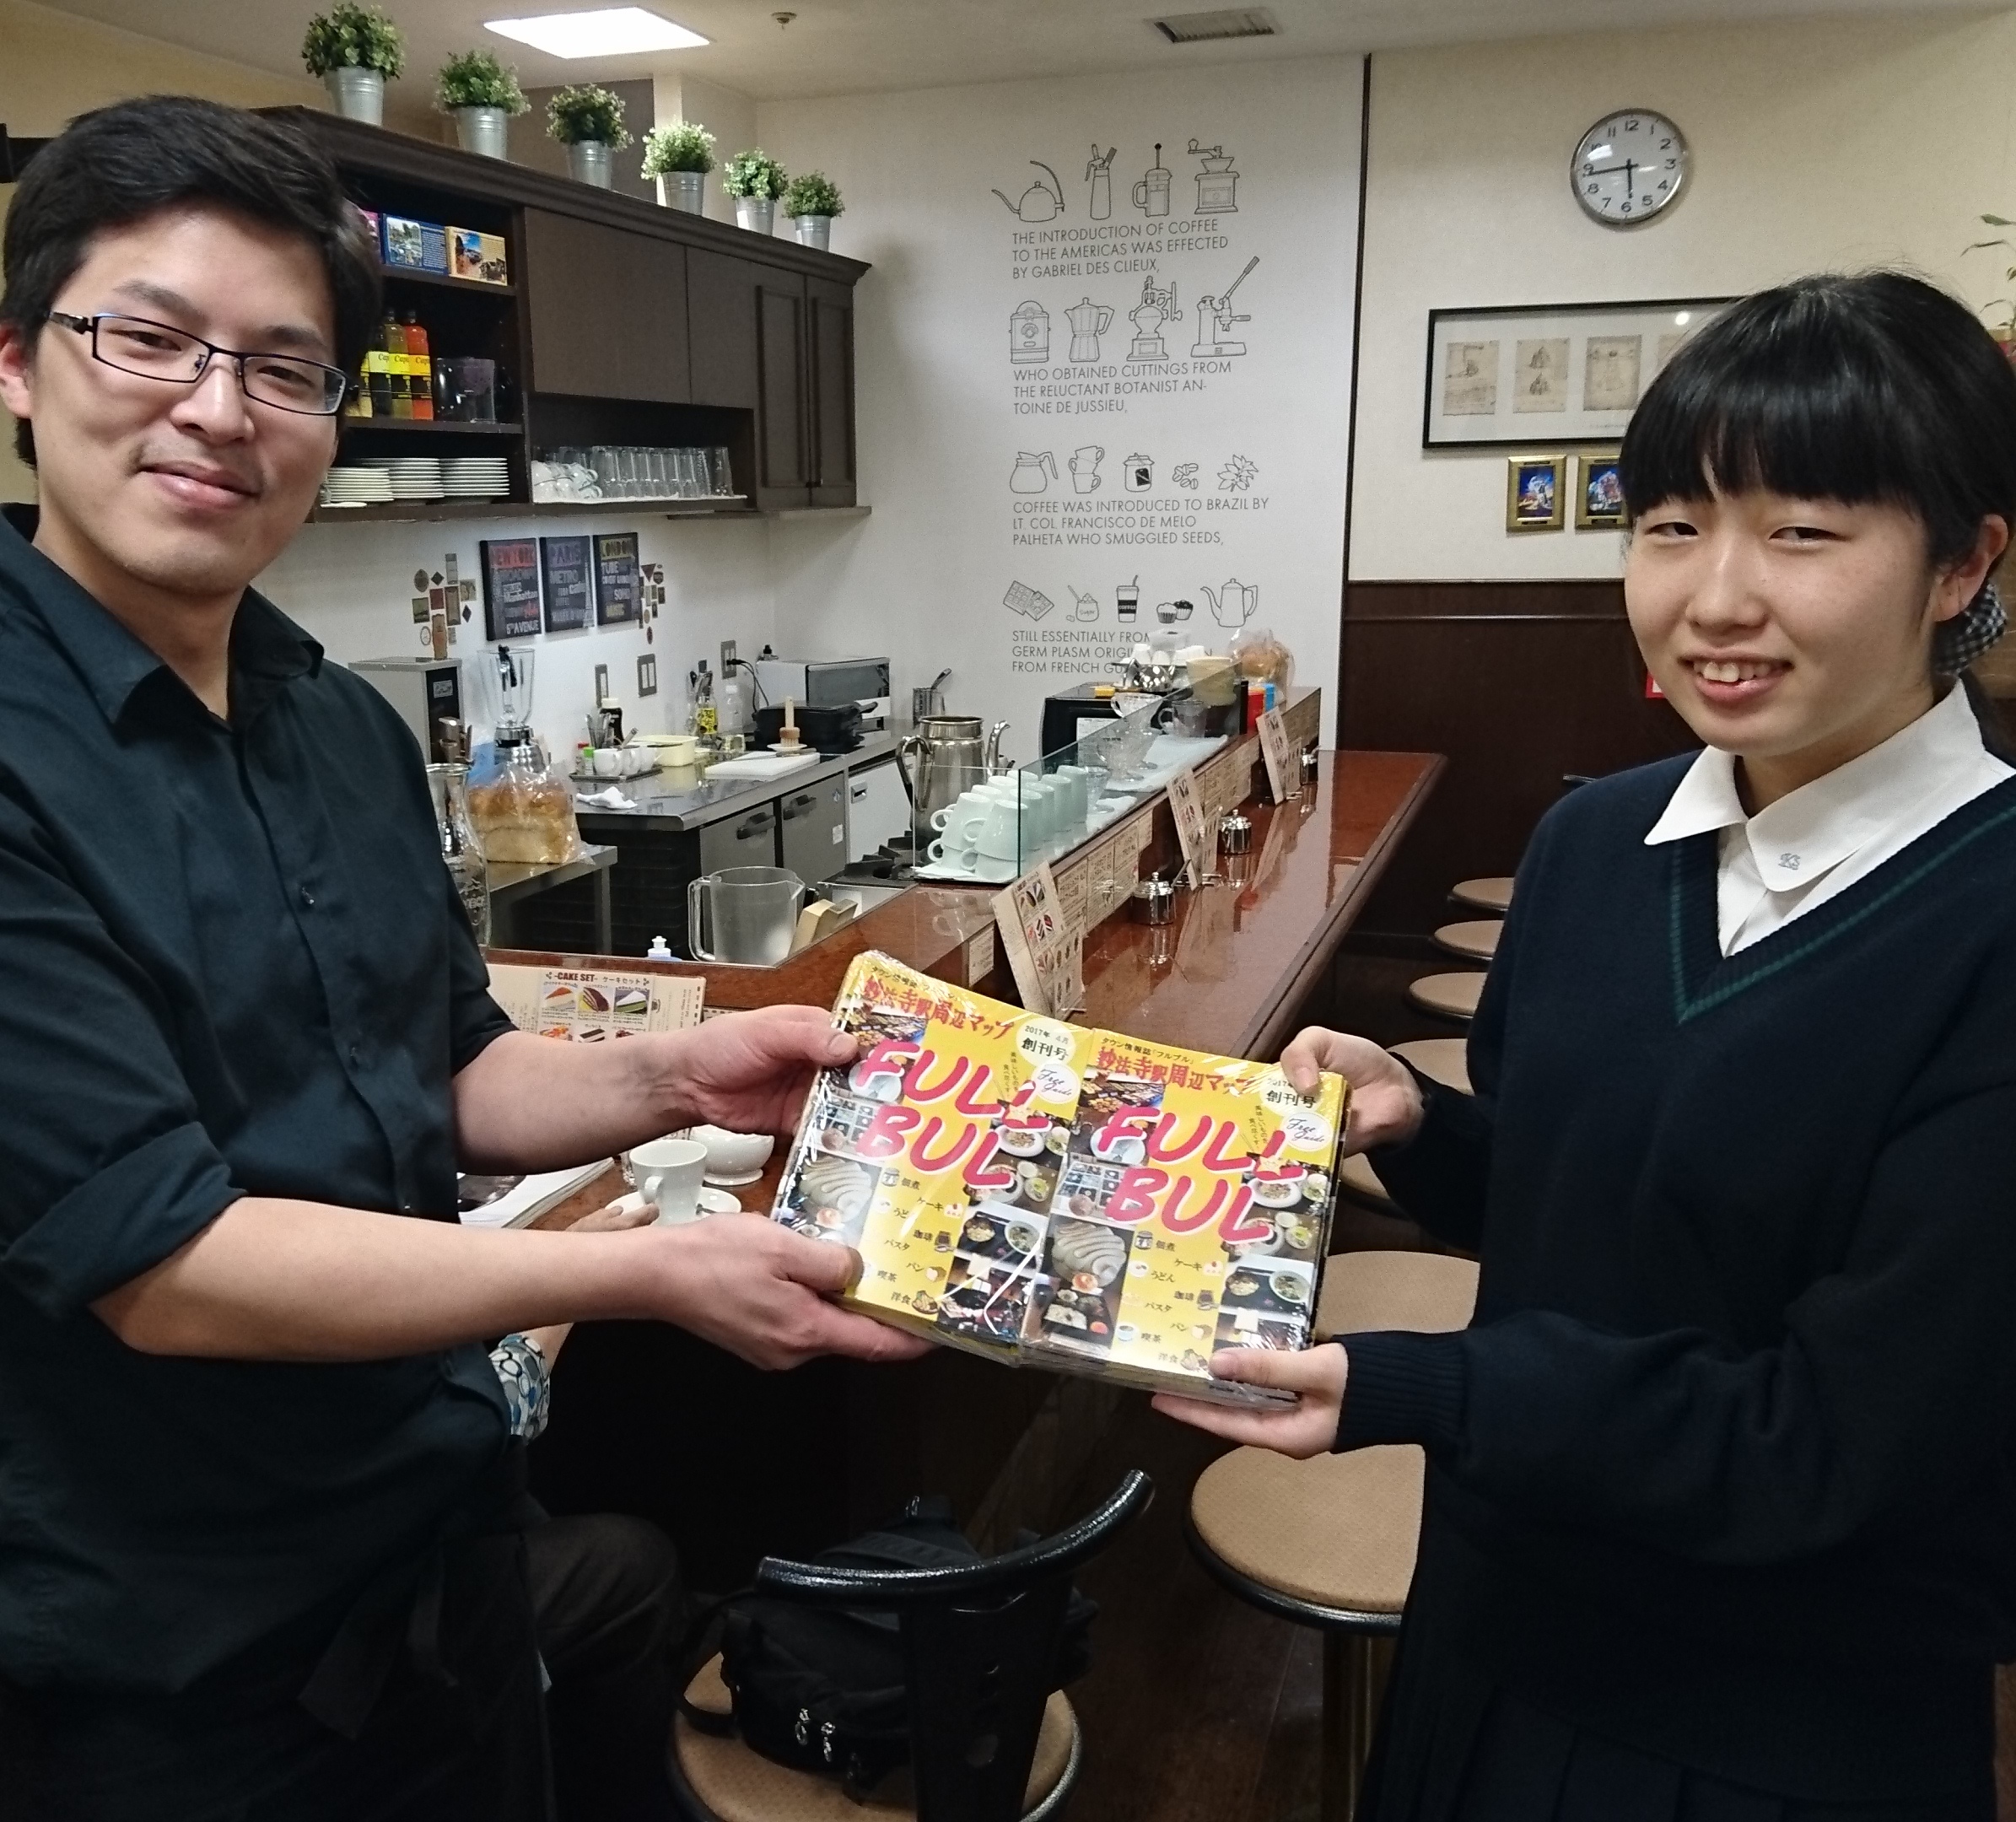 神戸星城高等学校コンピュータ部の物語り コープともしびボランティア振興財団